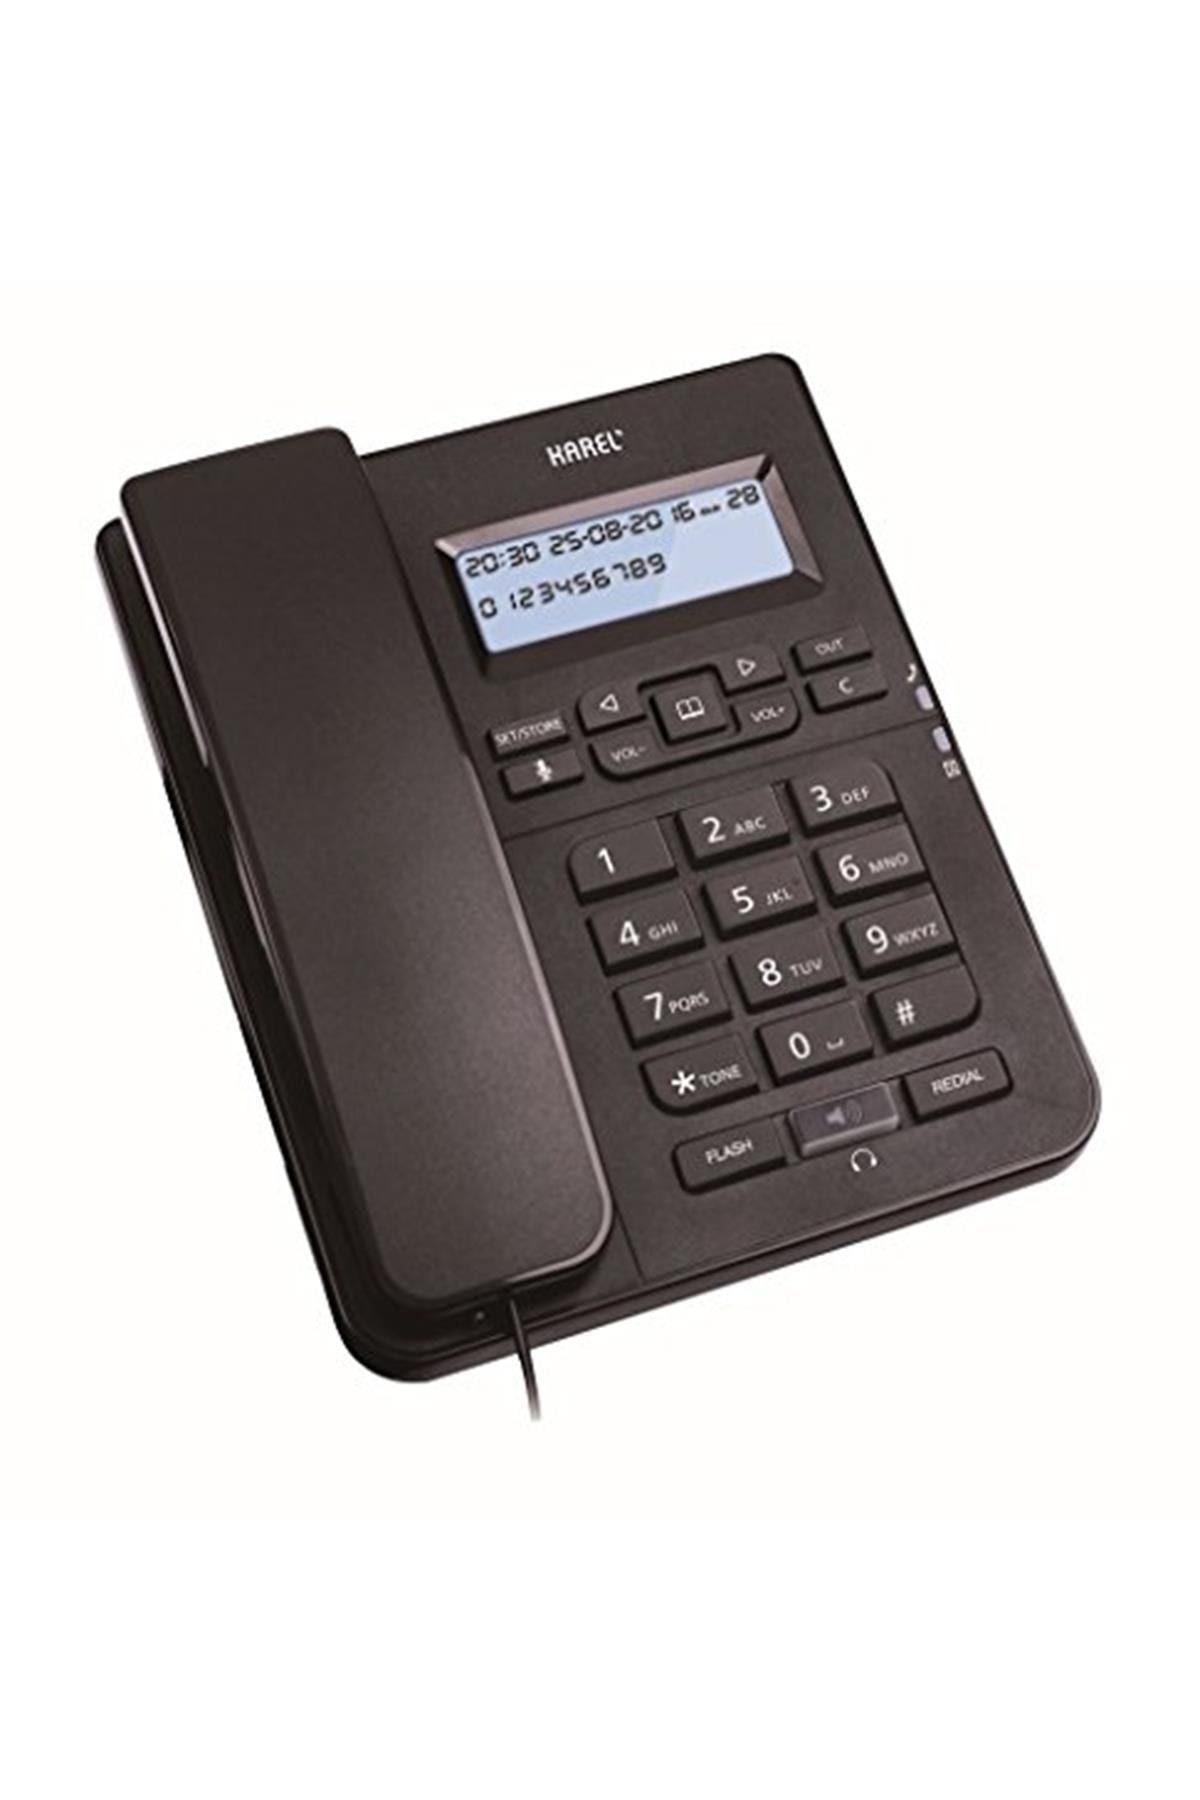 KAREL Tm145 Siyah Tm145 Siyah Kablolu Telefon, Siyah